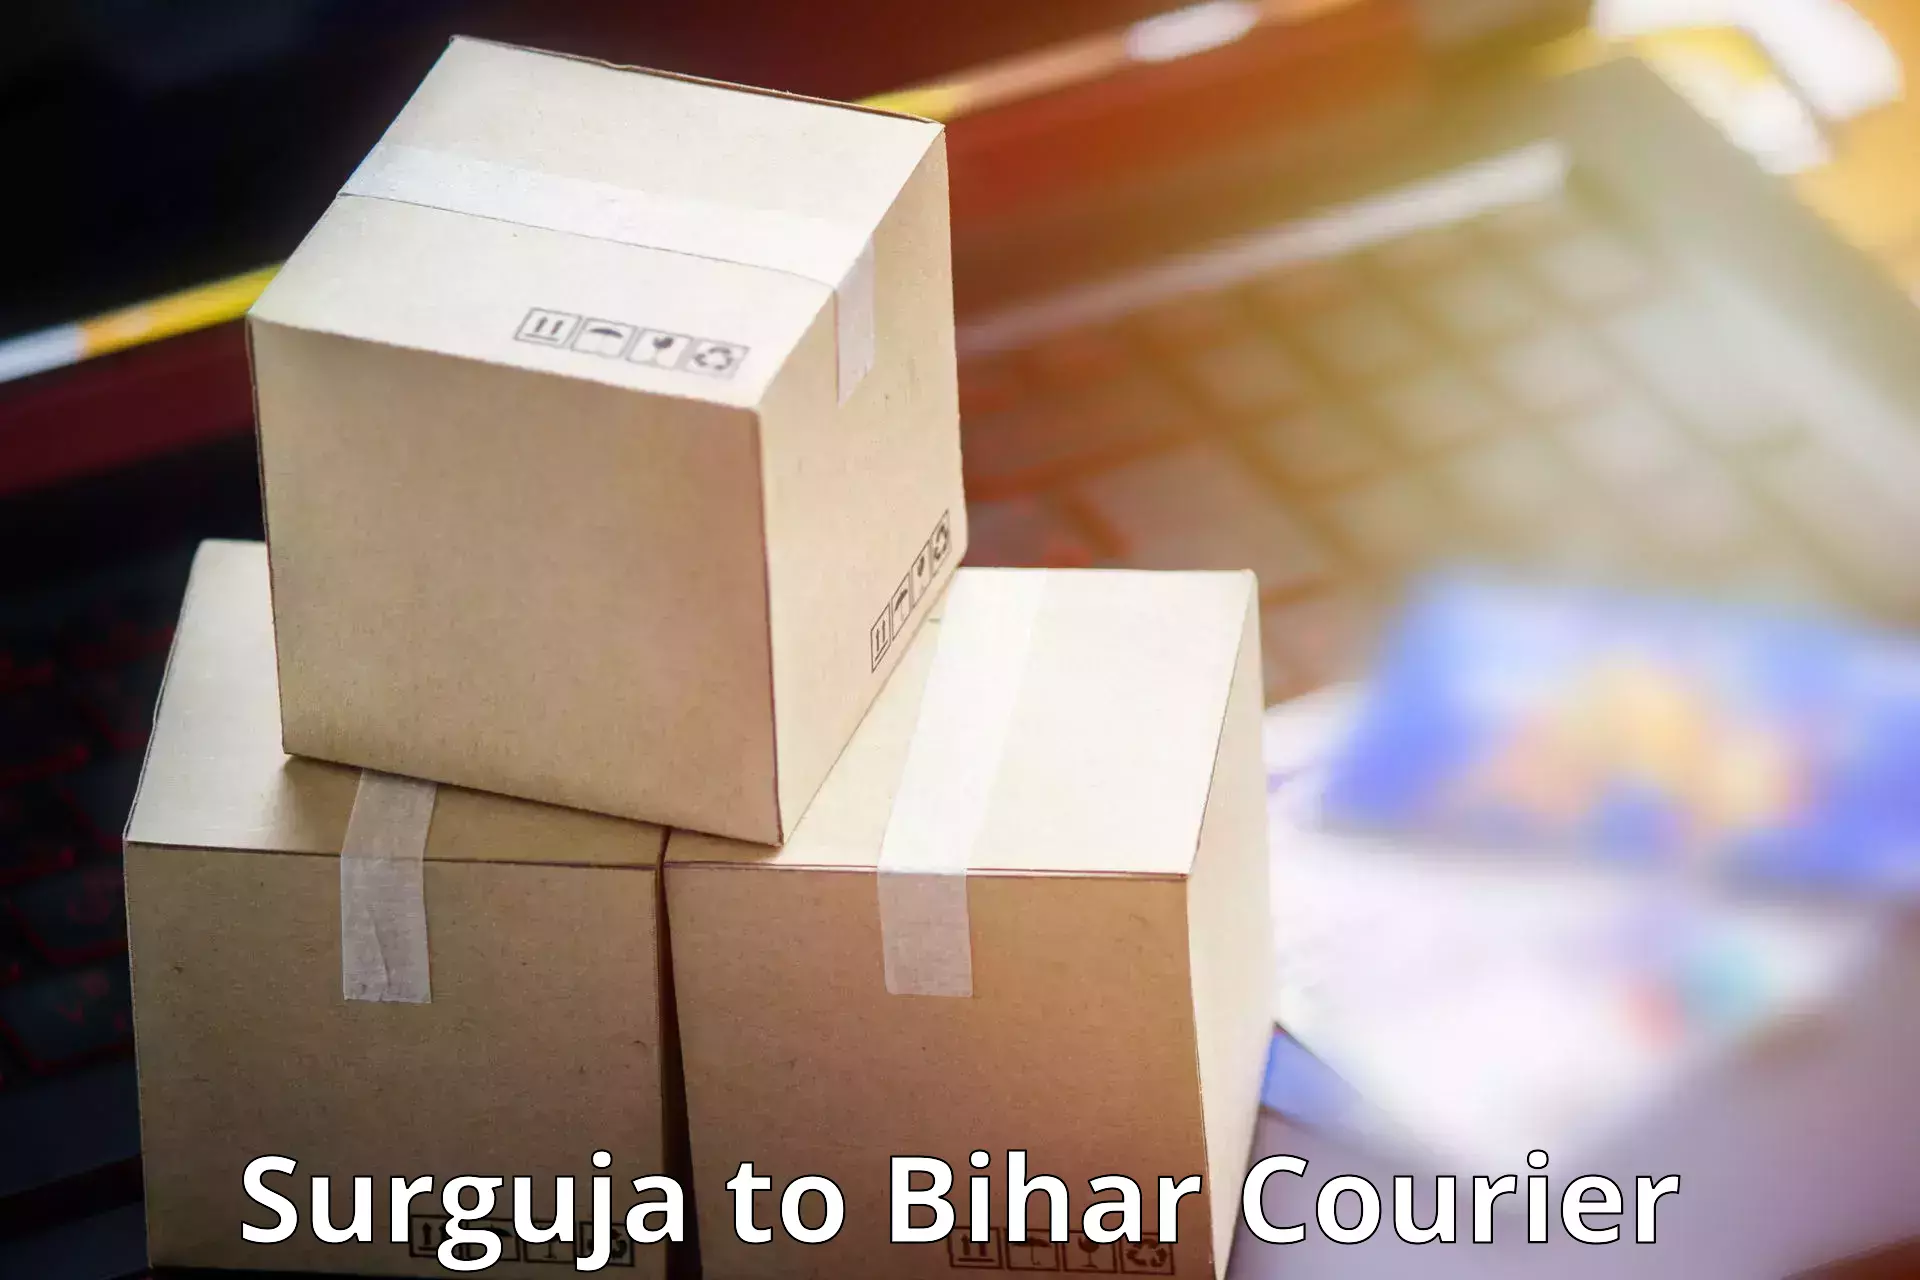 Professional parcel services Surguja to Parsauni